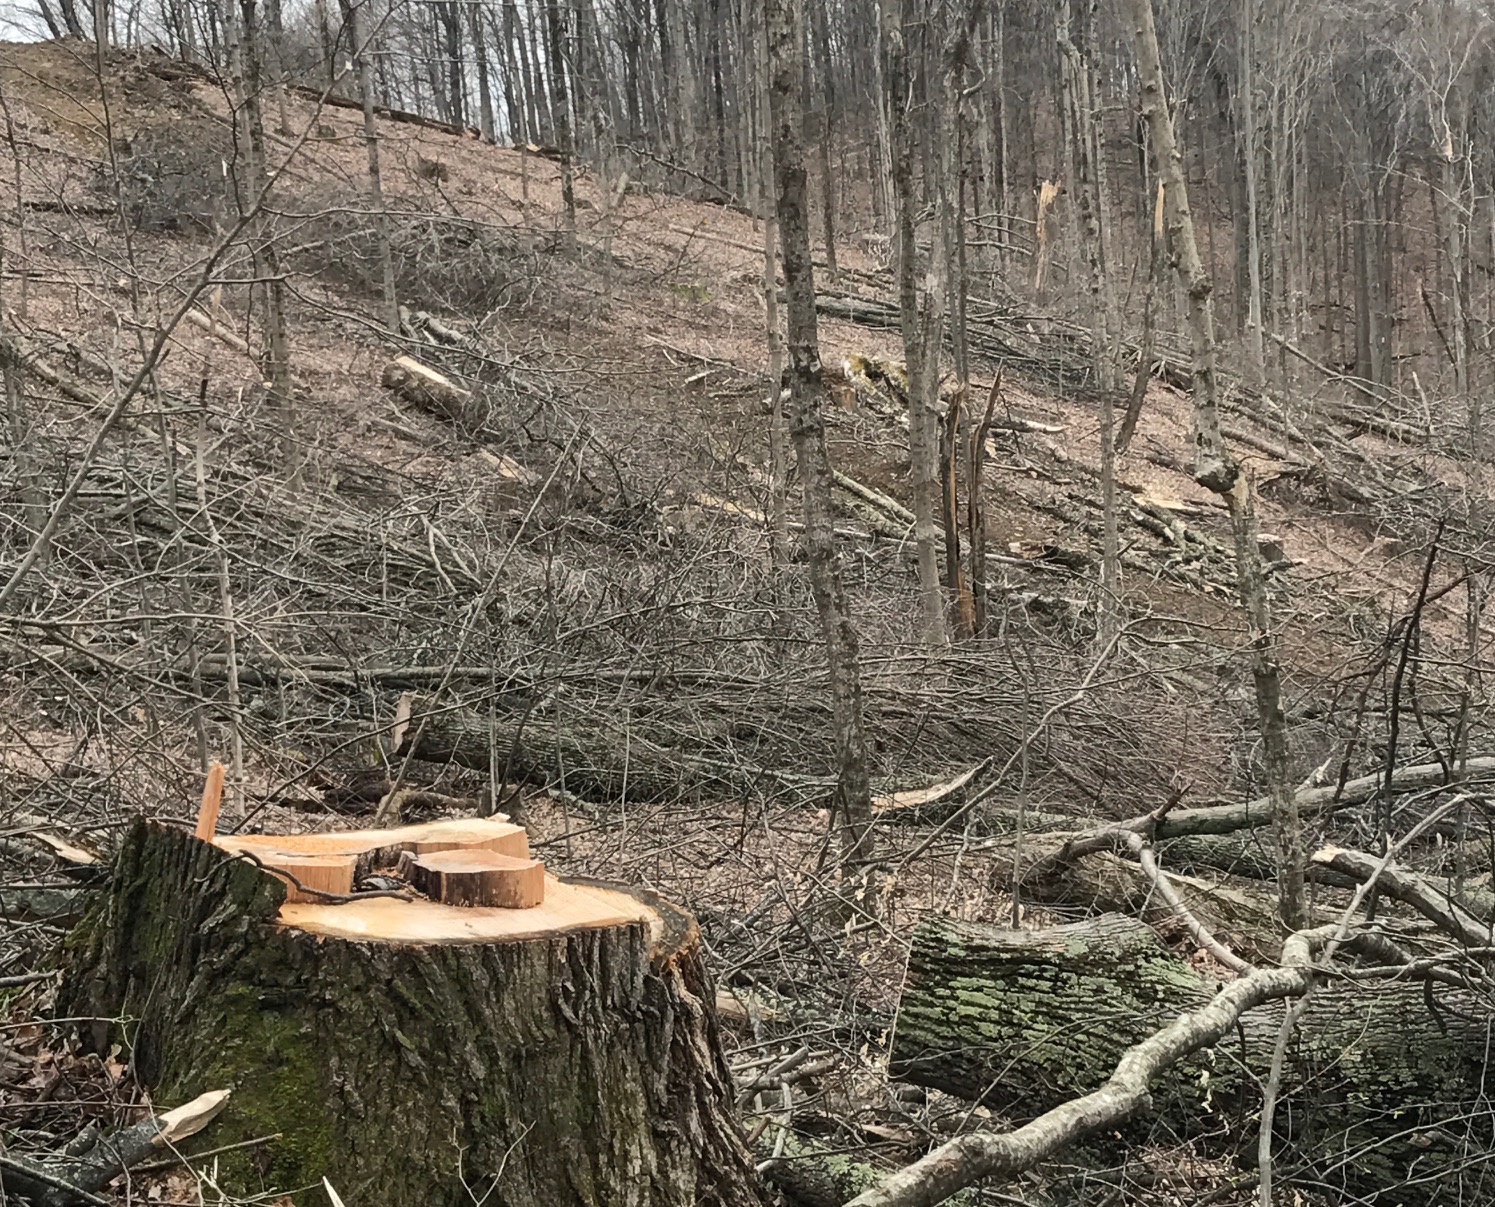 Logging aftermath at Miller Ridge.